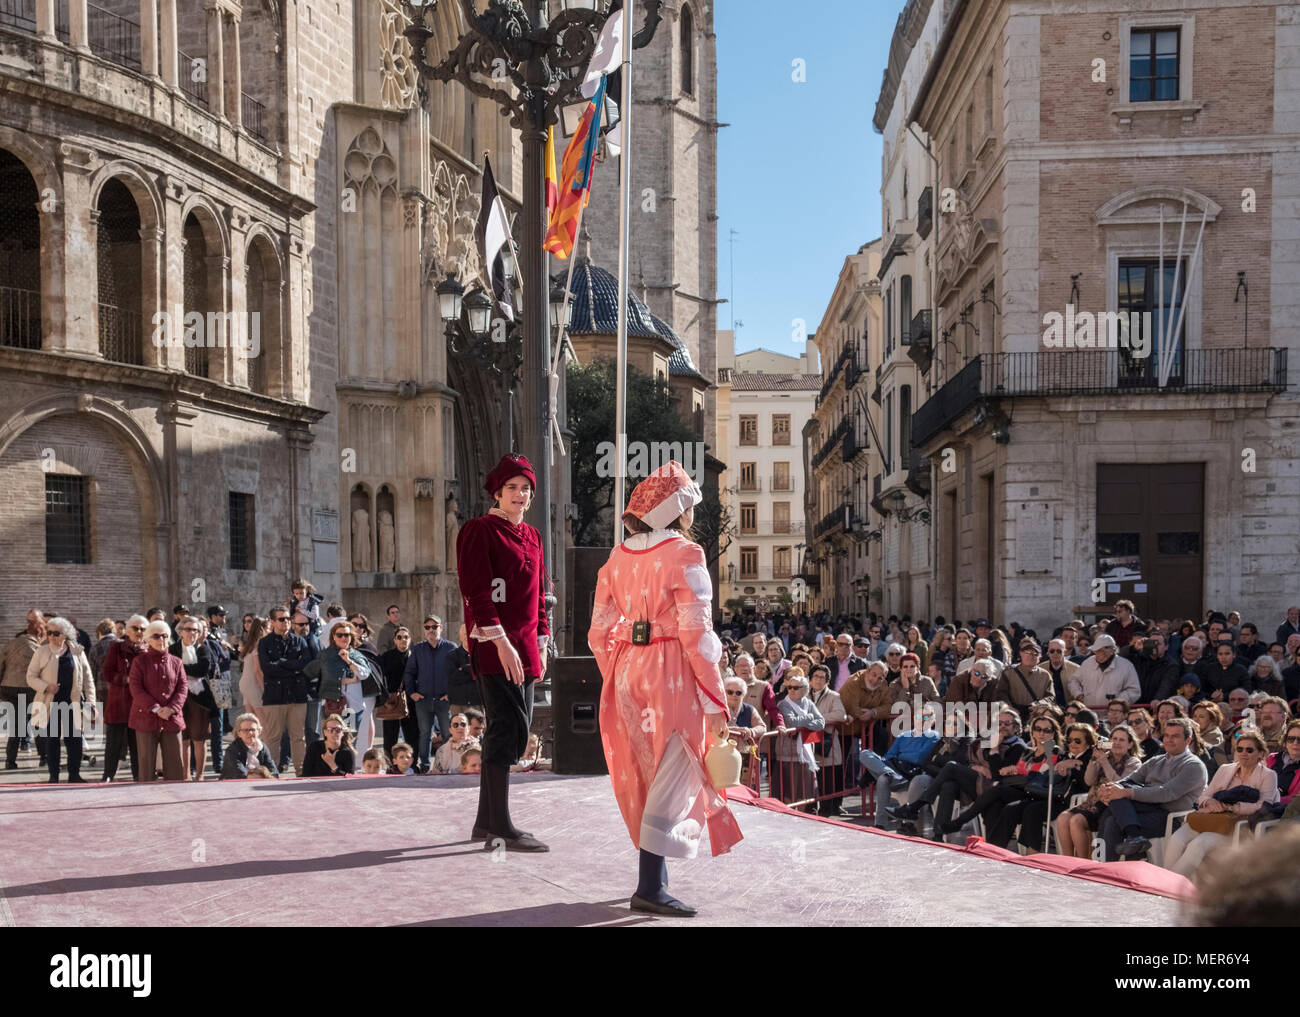 Personas viendo una representación teatral en la Plaza de la Virgen, al norte del distrito de Ciutat Vella, el casco antiguo de la ciudad de Valencia, España. Foto de stock